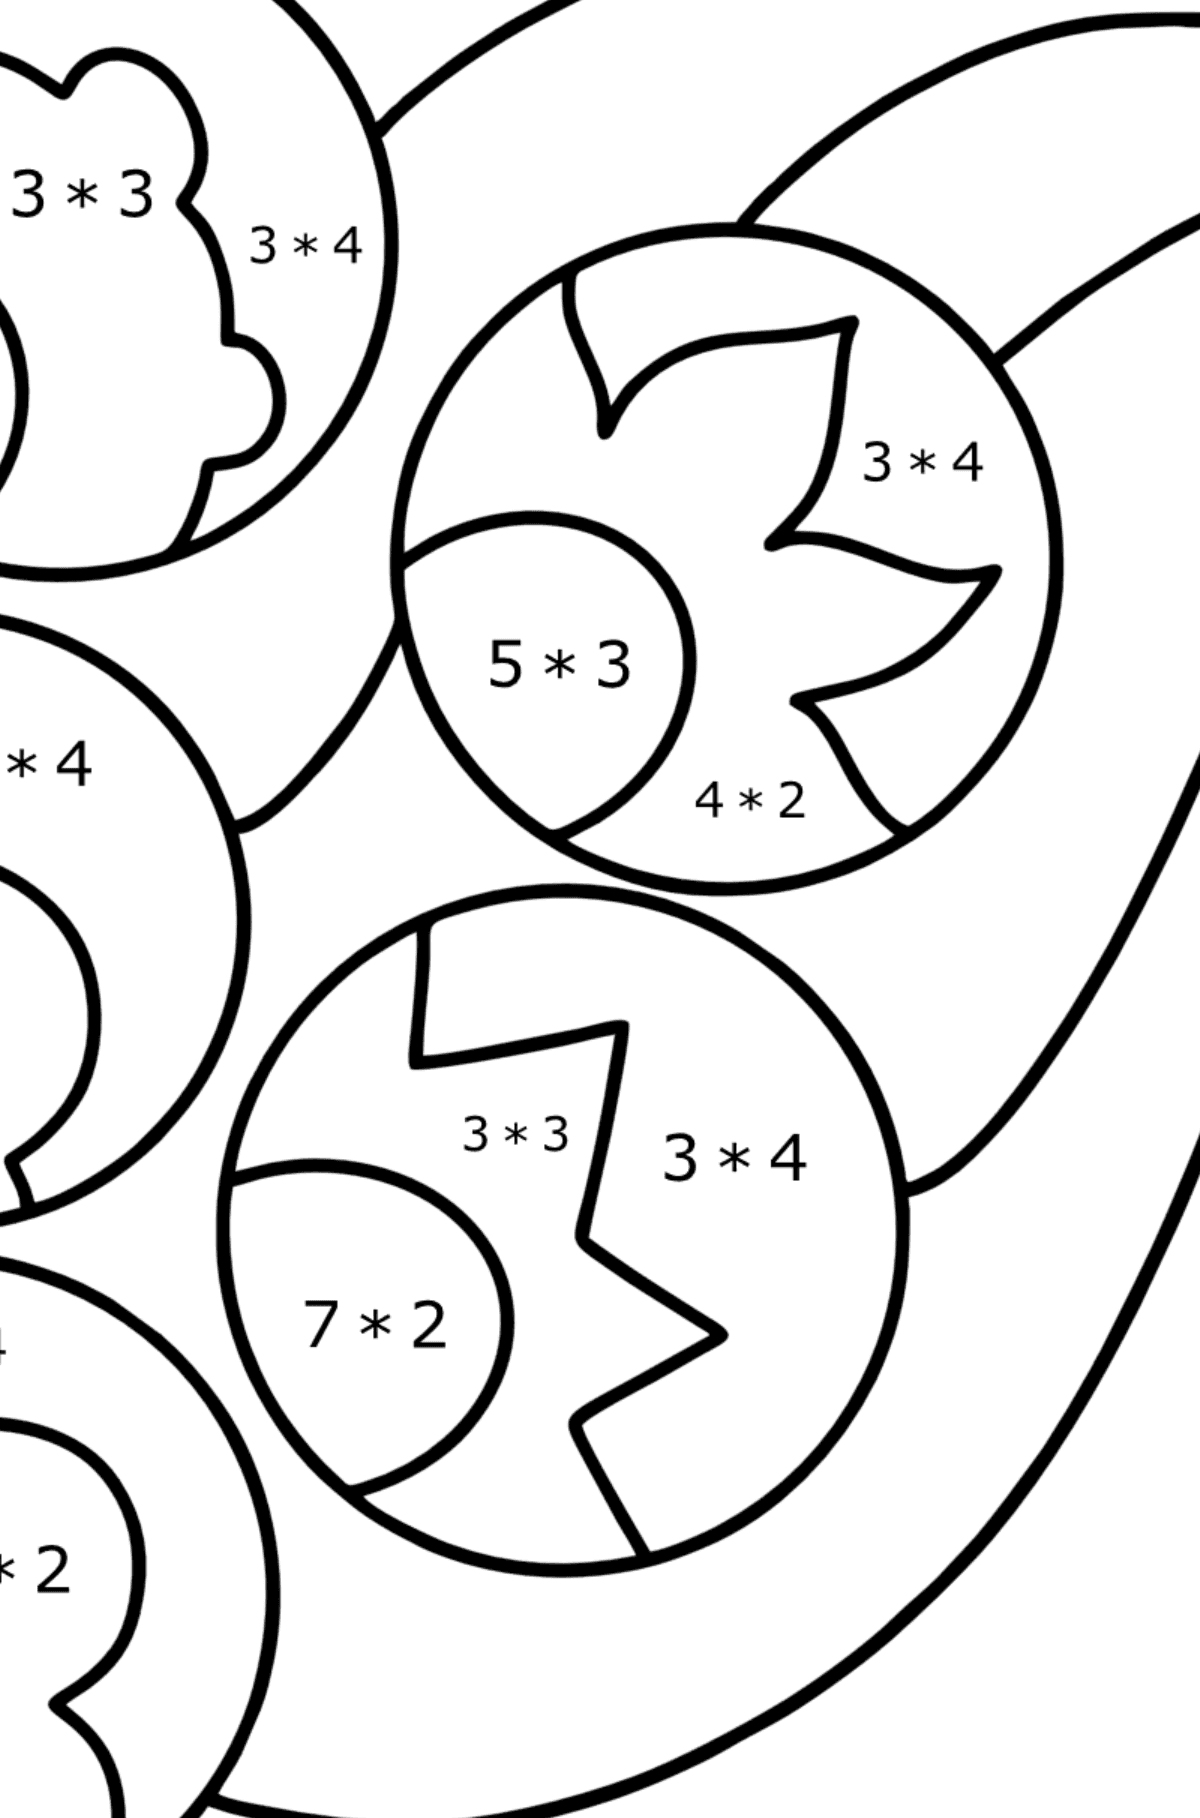 Desenho para colorir Zentangle Inspired - Colorindo com Matemática - Multiplicação para Crianças